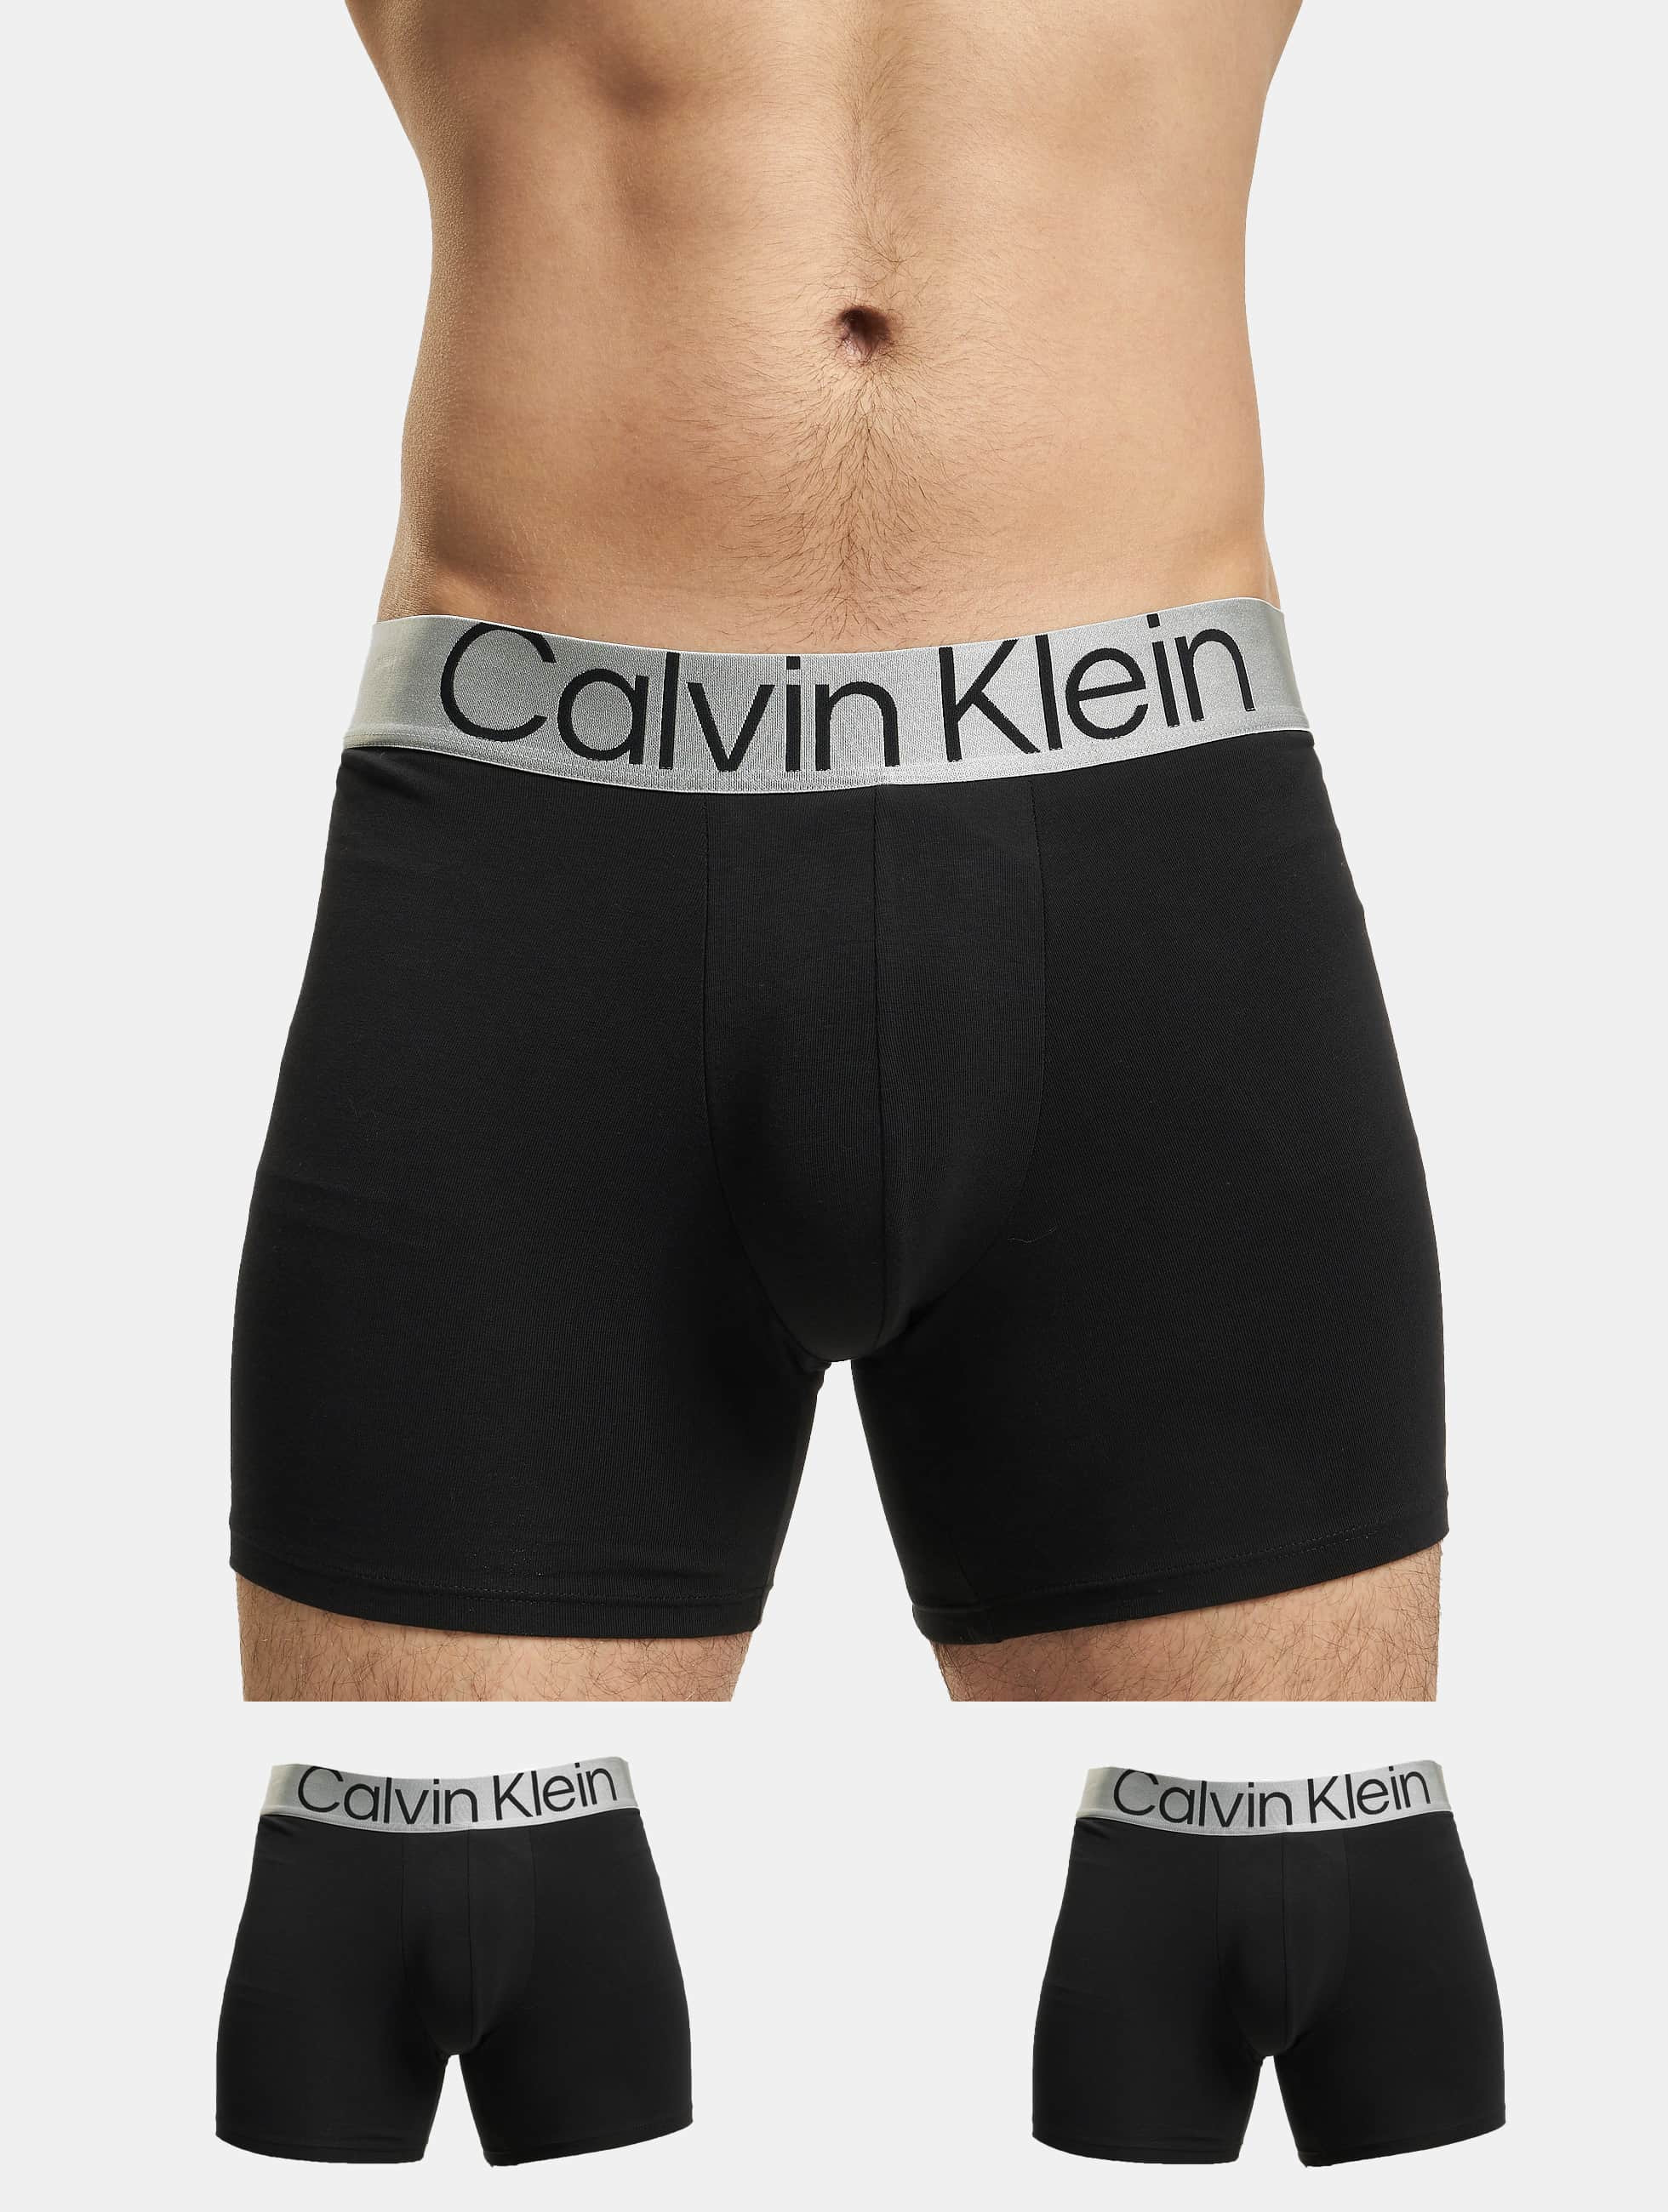 Huis ei kwaadheid de vrije loop geven Calvin Klein Ondergoed / Badmode / boxershorts 3-Pack in zwart 957396